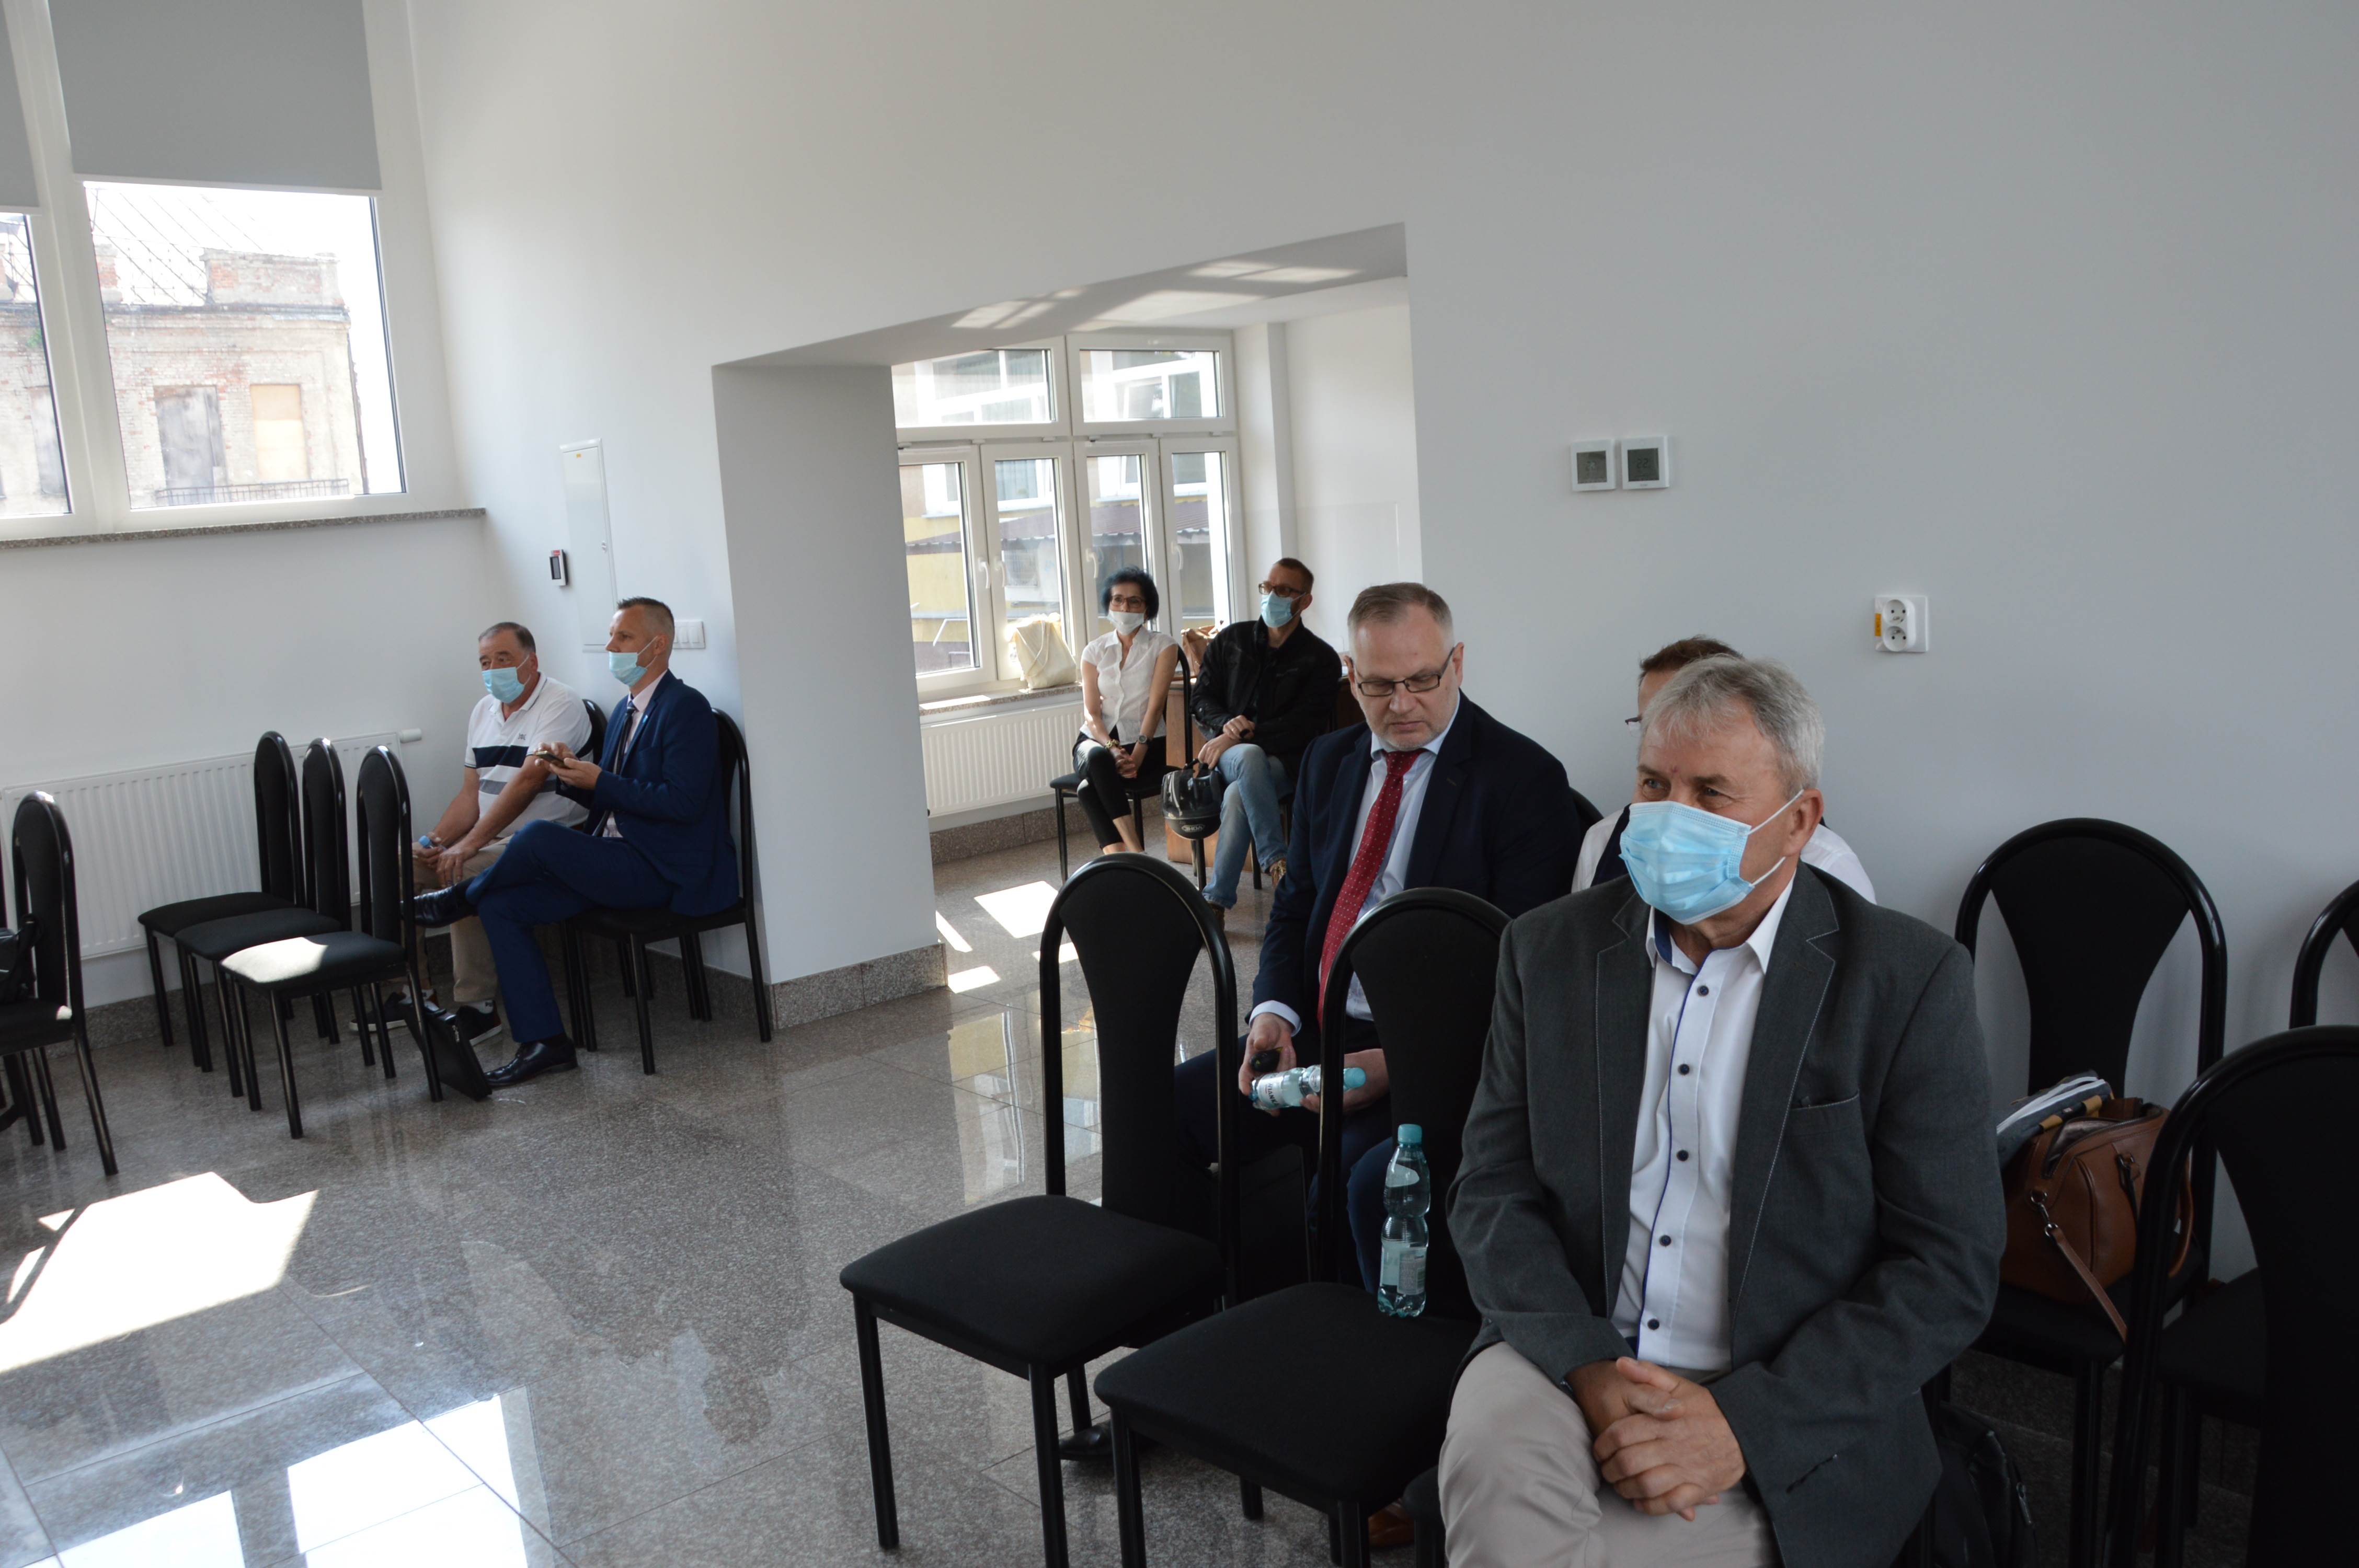 Dyrektor radzyńskiego szpitala po roku pandemii składa sprawozdanie  - Zdjęcie główne